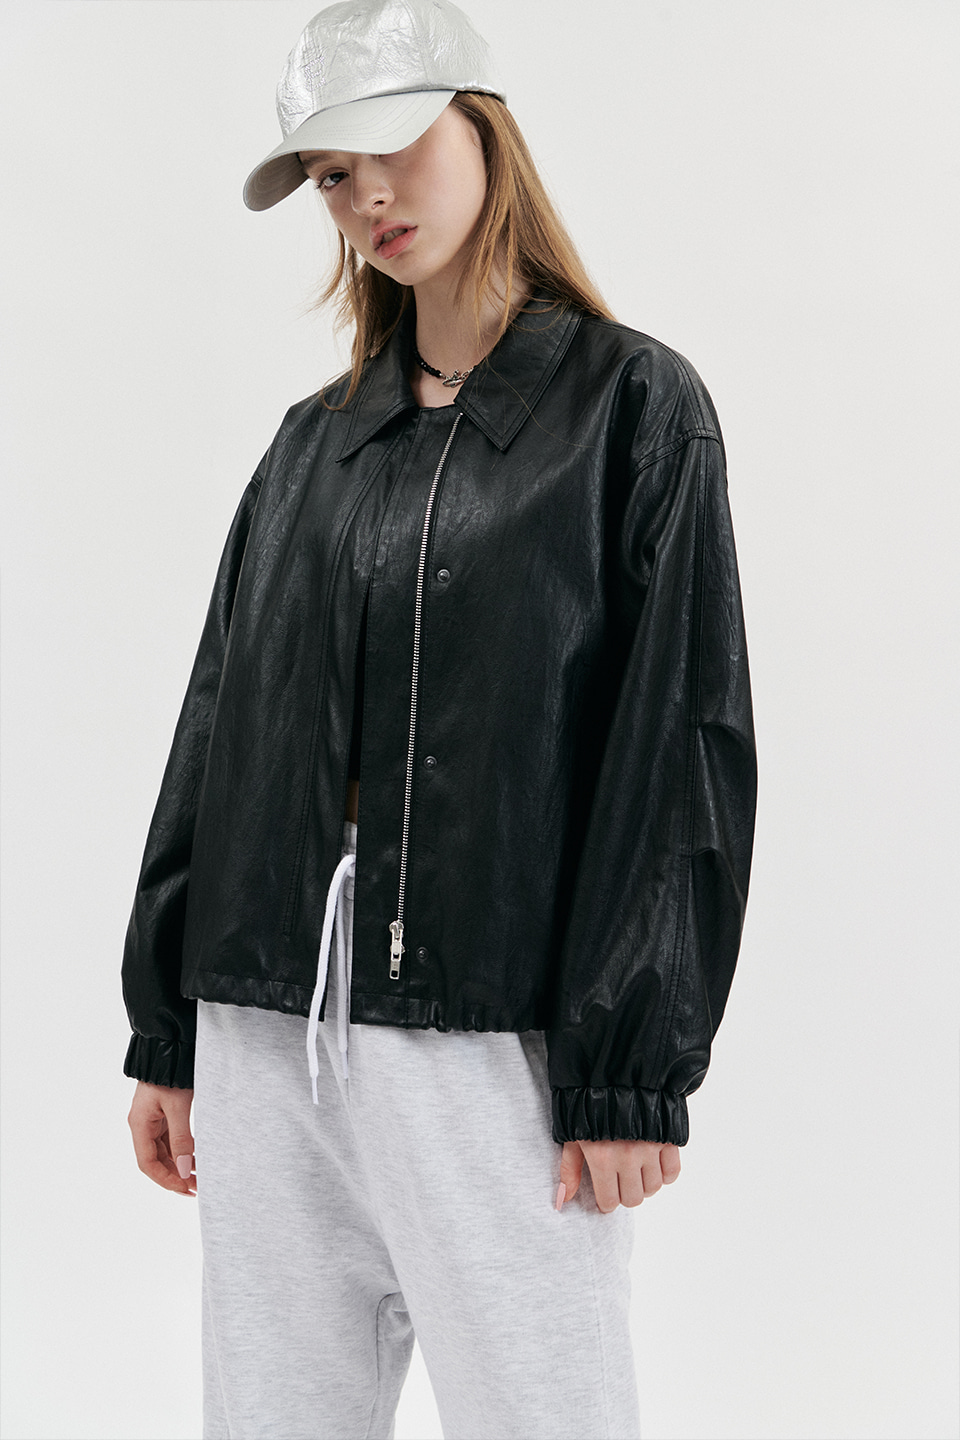 FAUX Leather Overfit Blouson in Black